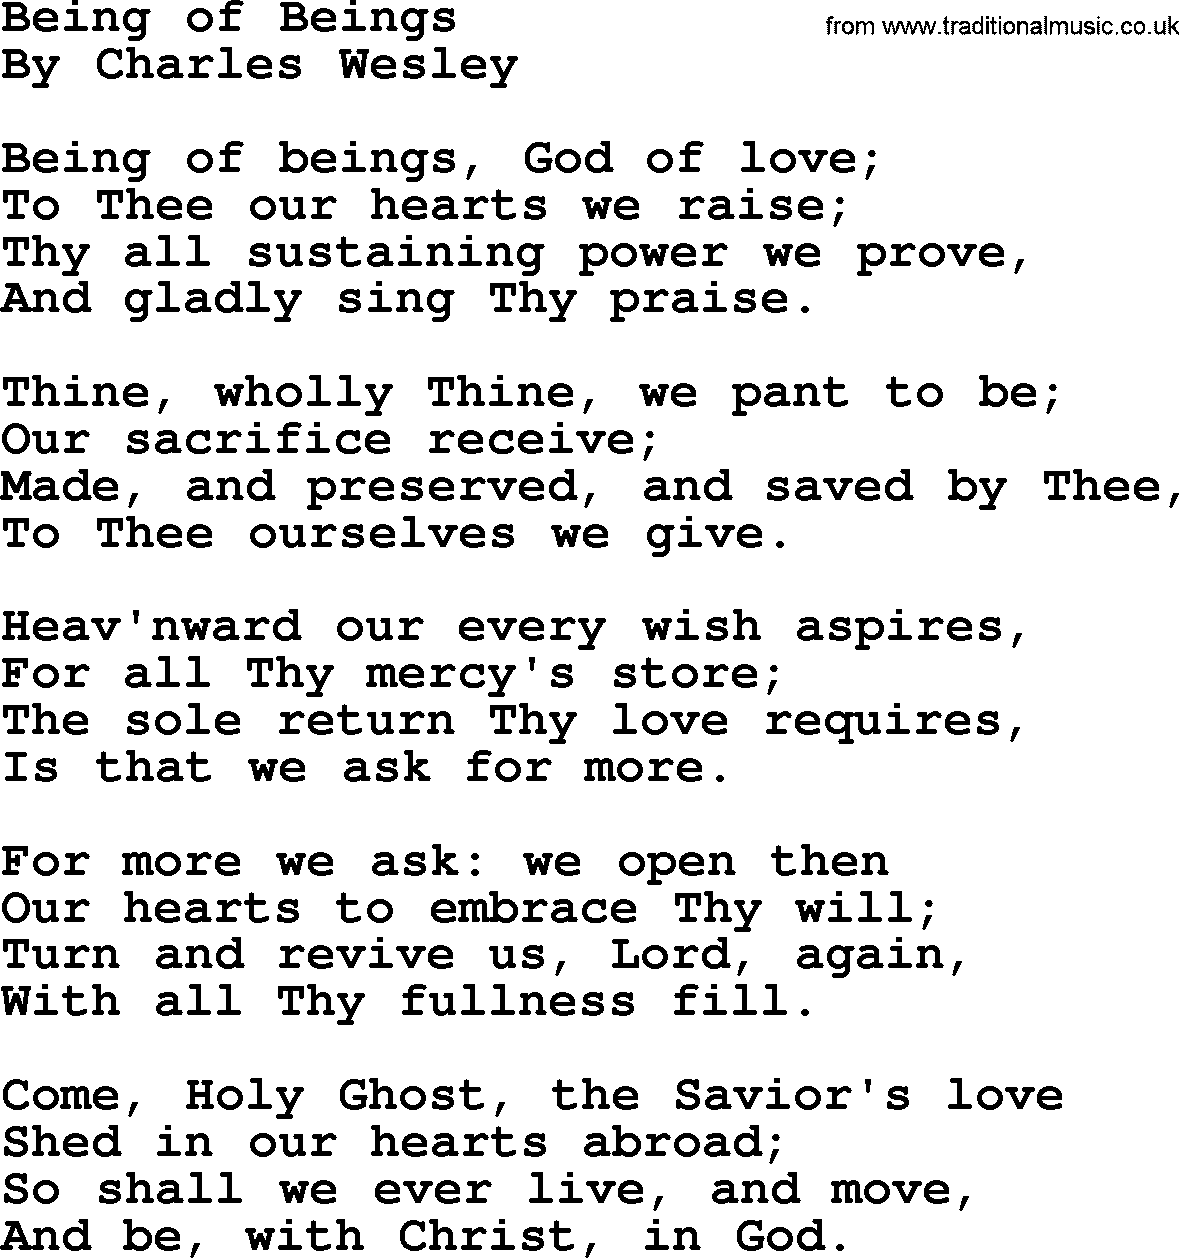 Charles Wesley hymn: Being of Beings, lyrics